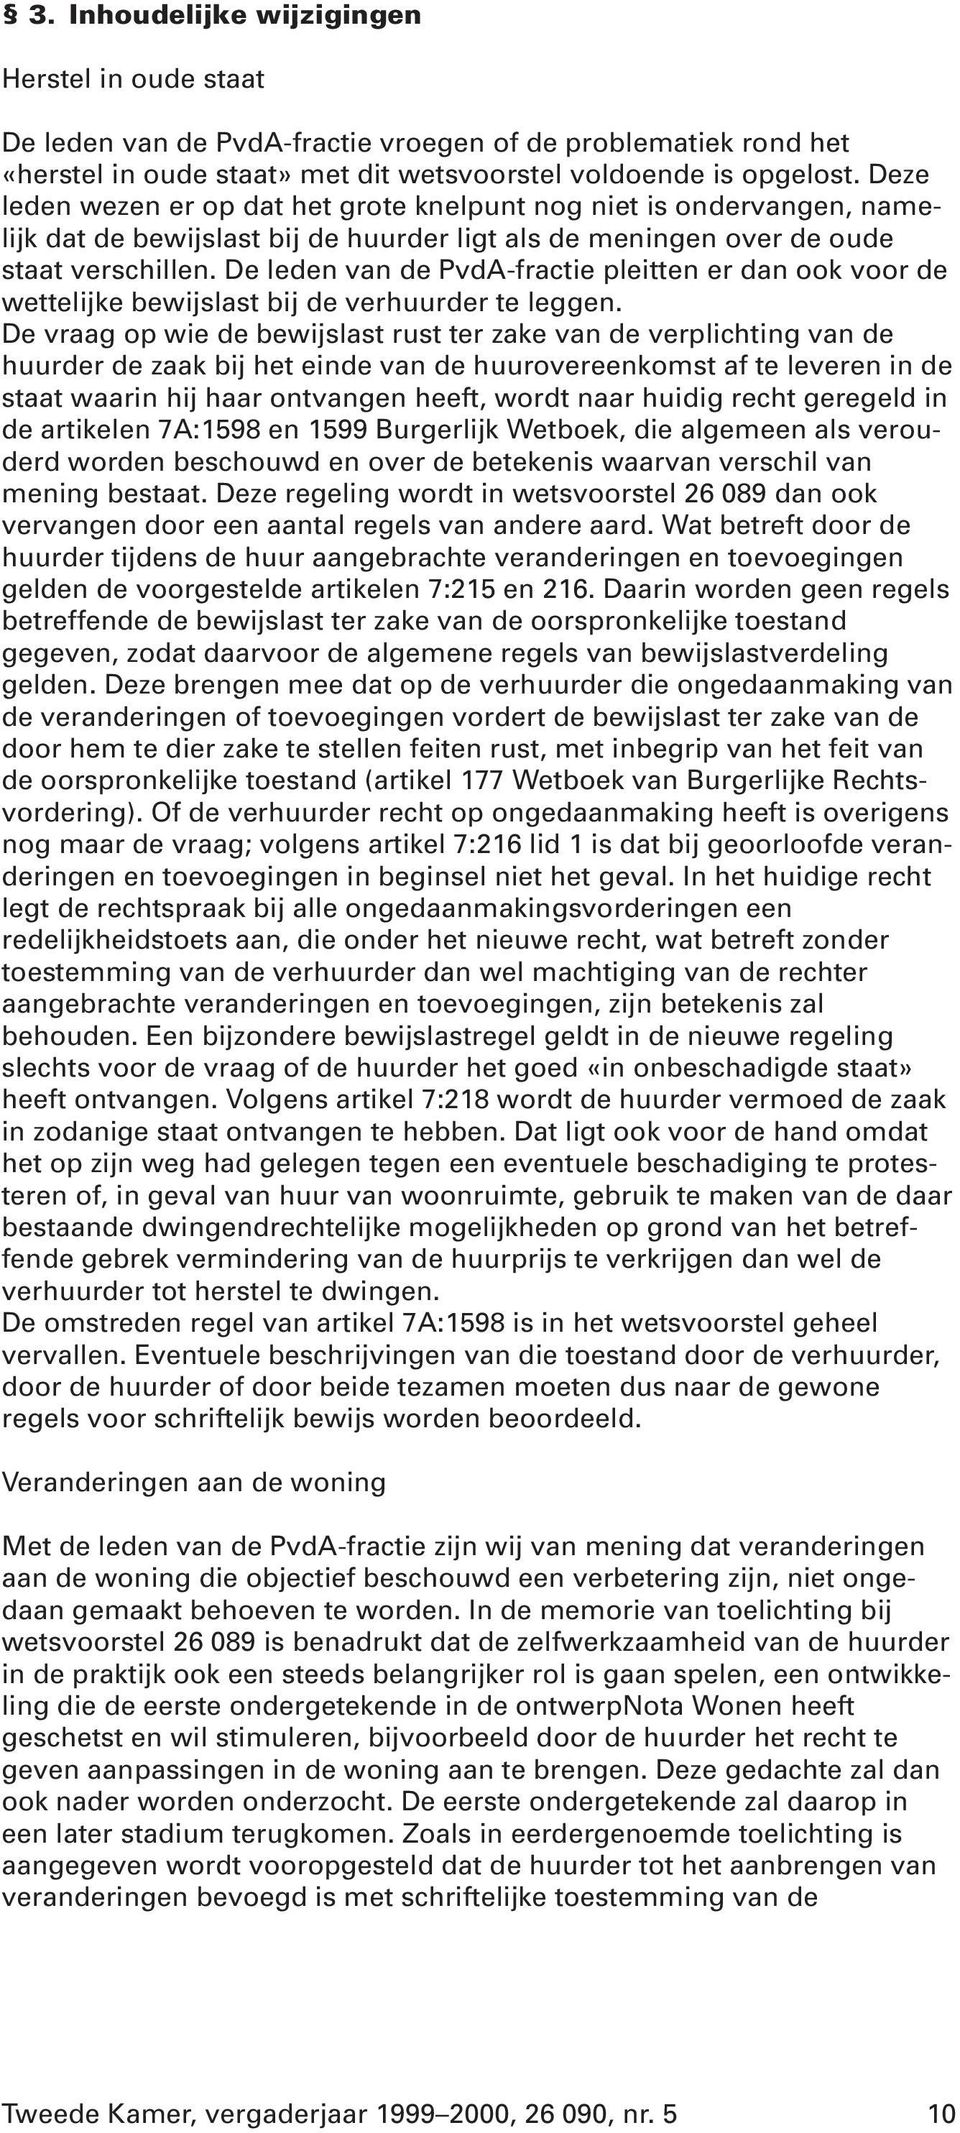 De leden van de PvdA-fractie pleitten er dan ook voor de wettelijke bewijslast bij de verhuurder te leggen.